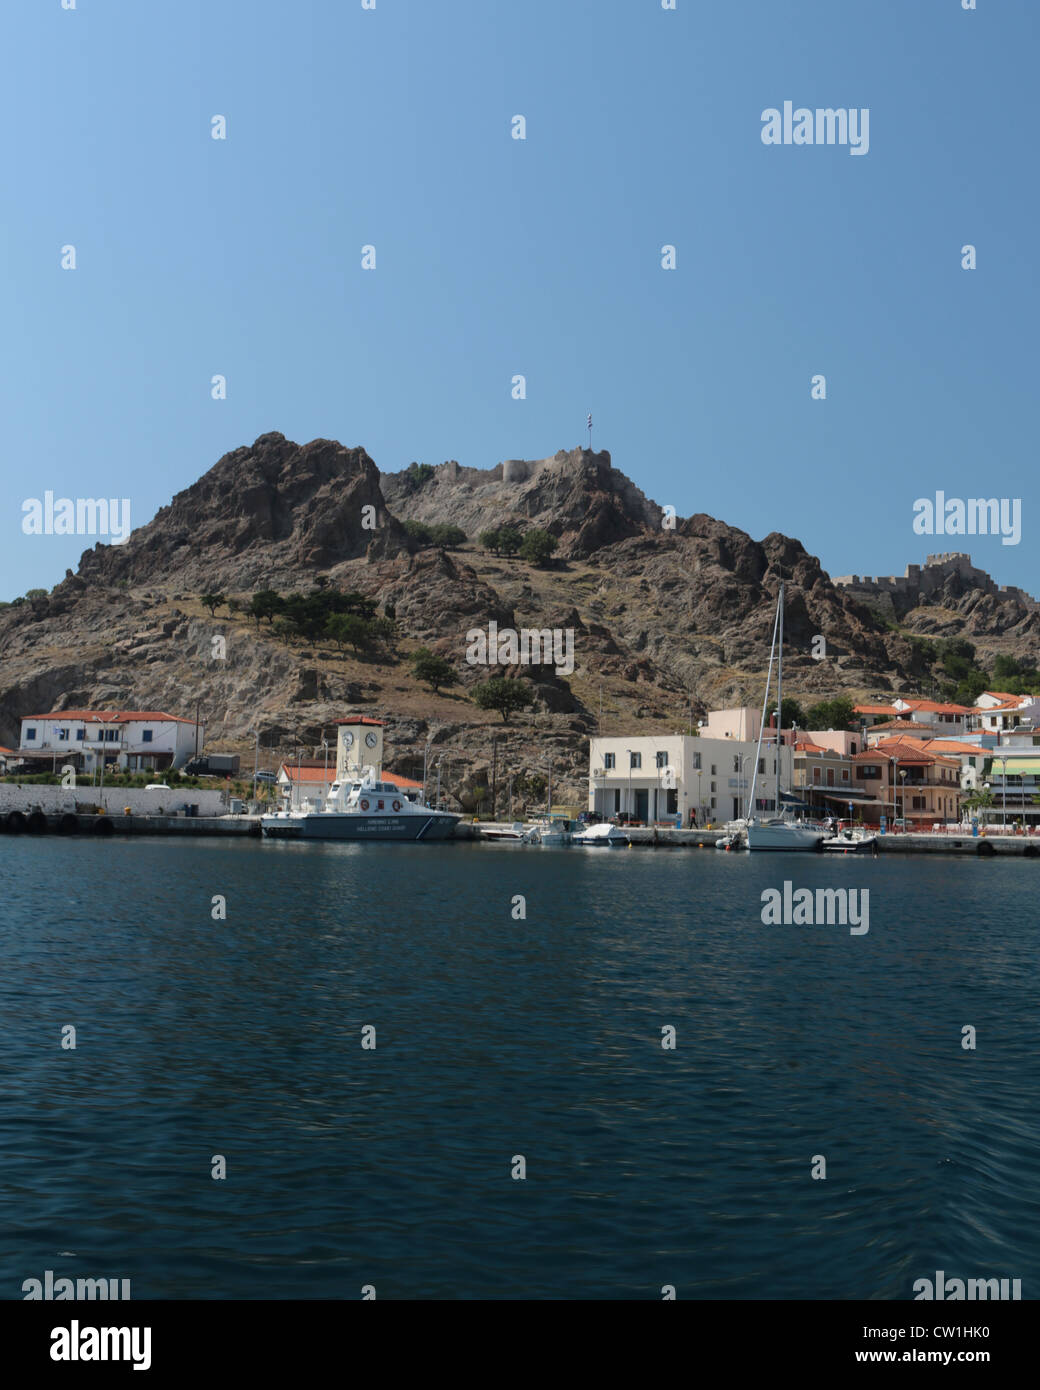 Le port de Myrina avec son château sur l'île grecque de Lemnos Banque D'Images